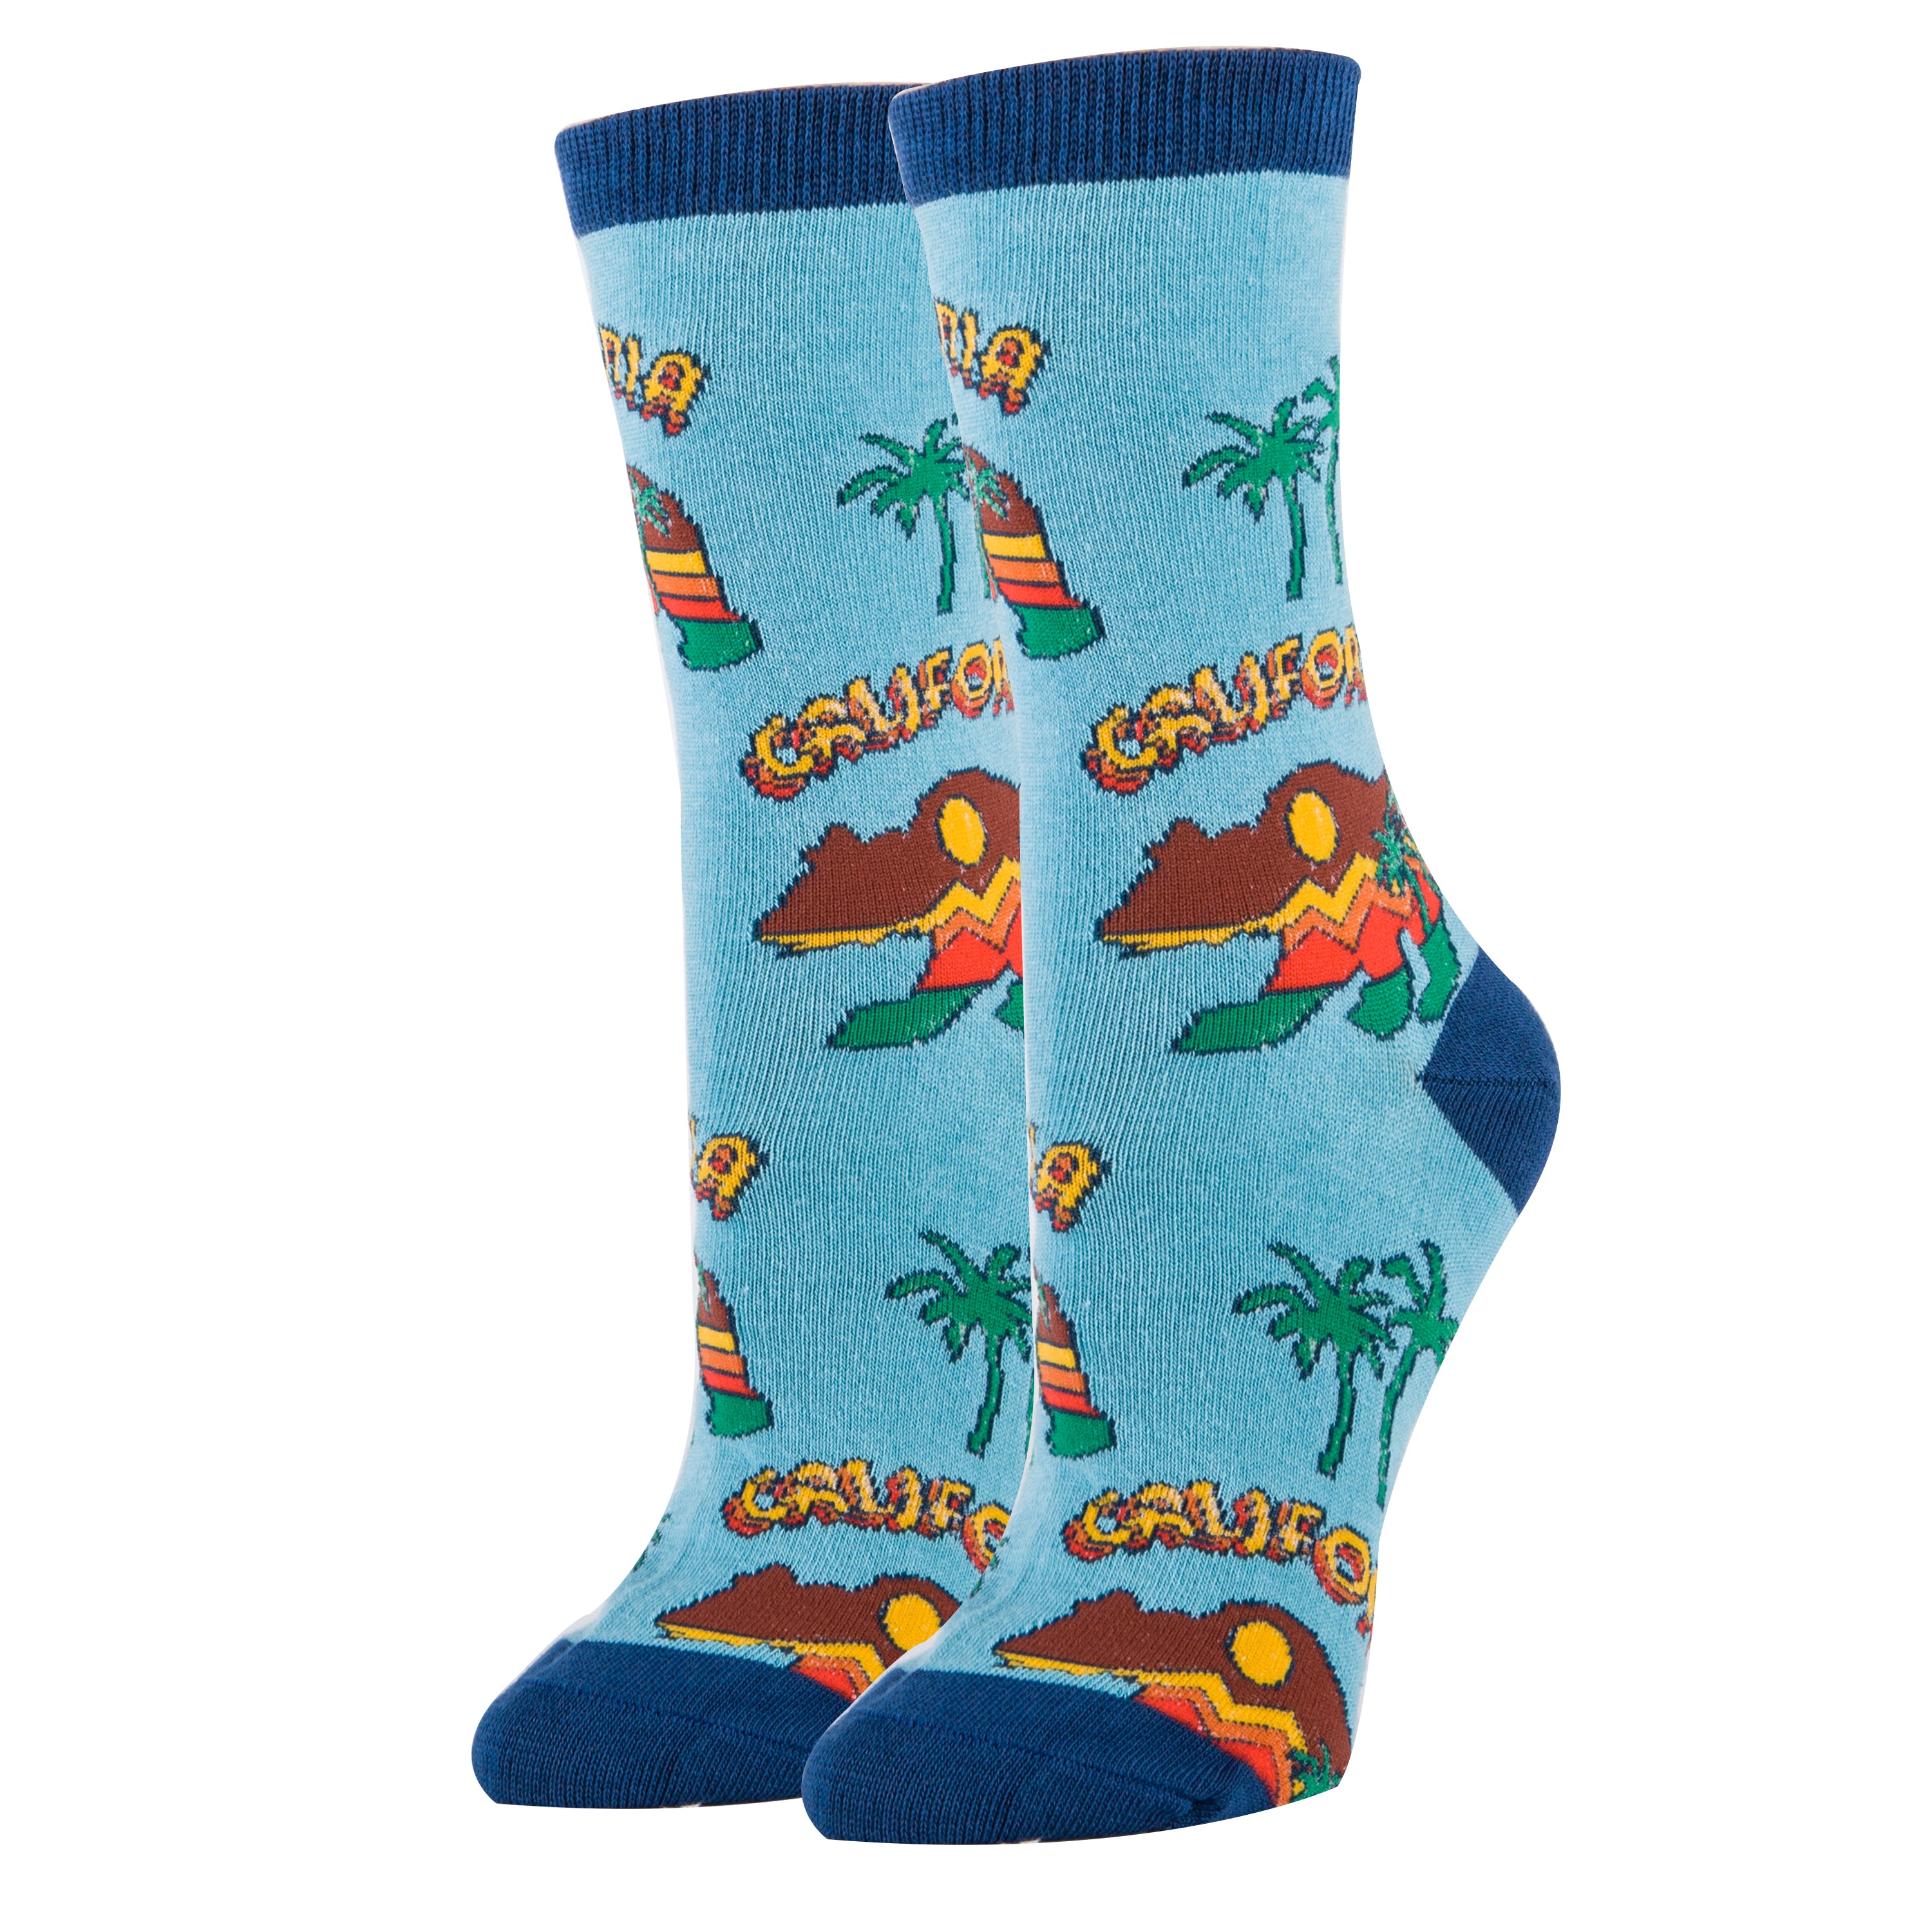 Cali Bear Socks | Novelty Crew Socks For Women